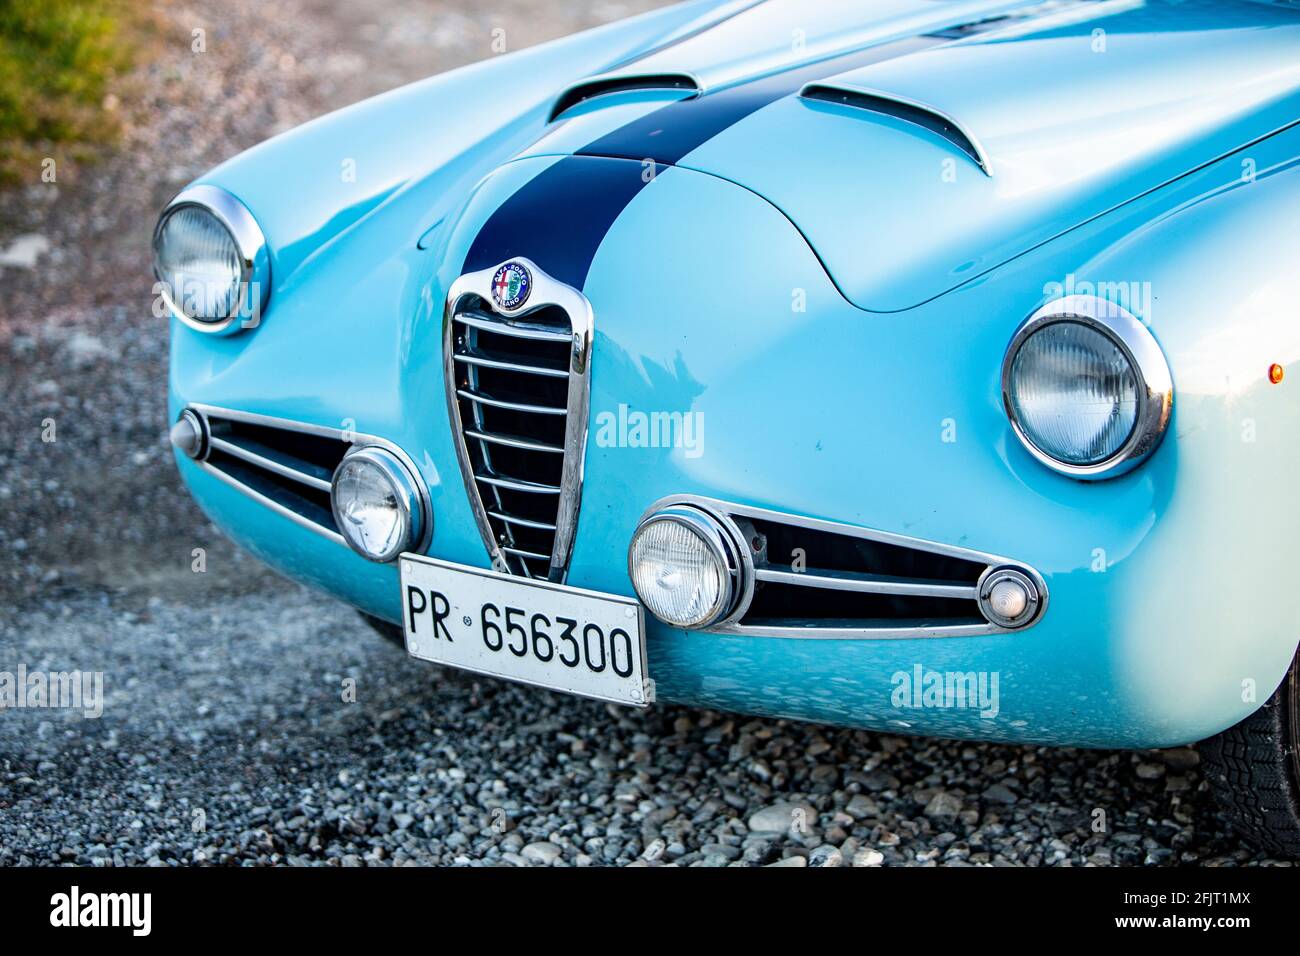 1955 Alfa Romeo 1900 SZ coupé Zagato Banque D'Images